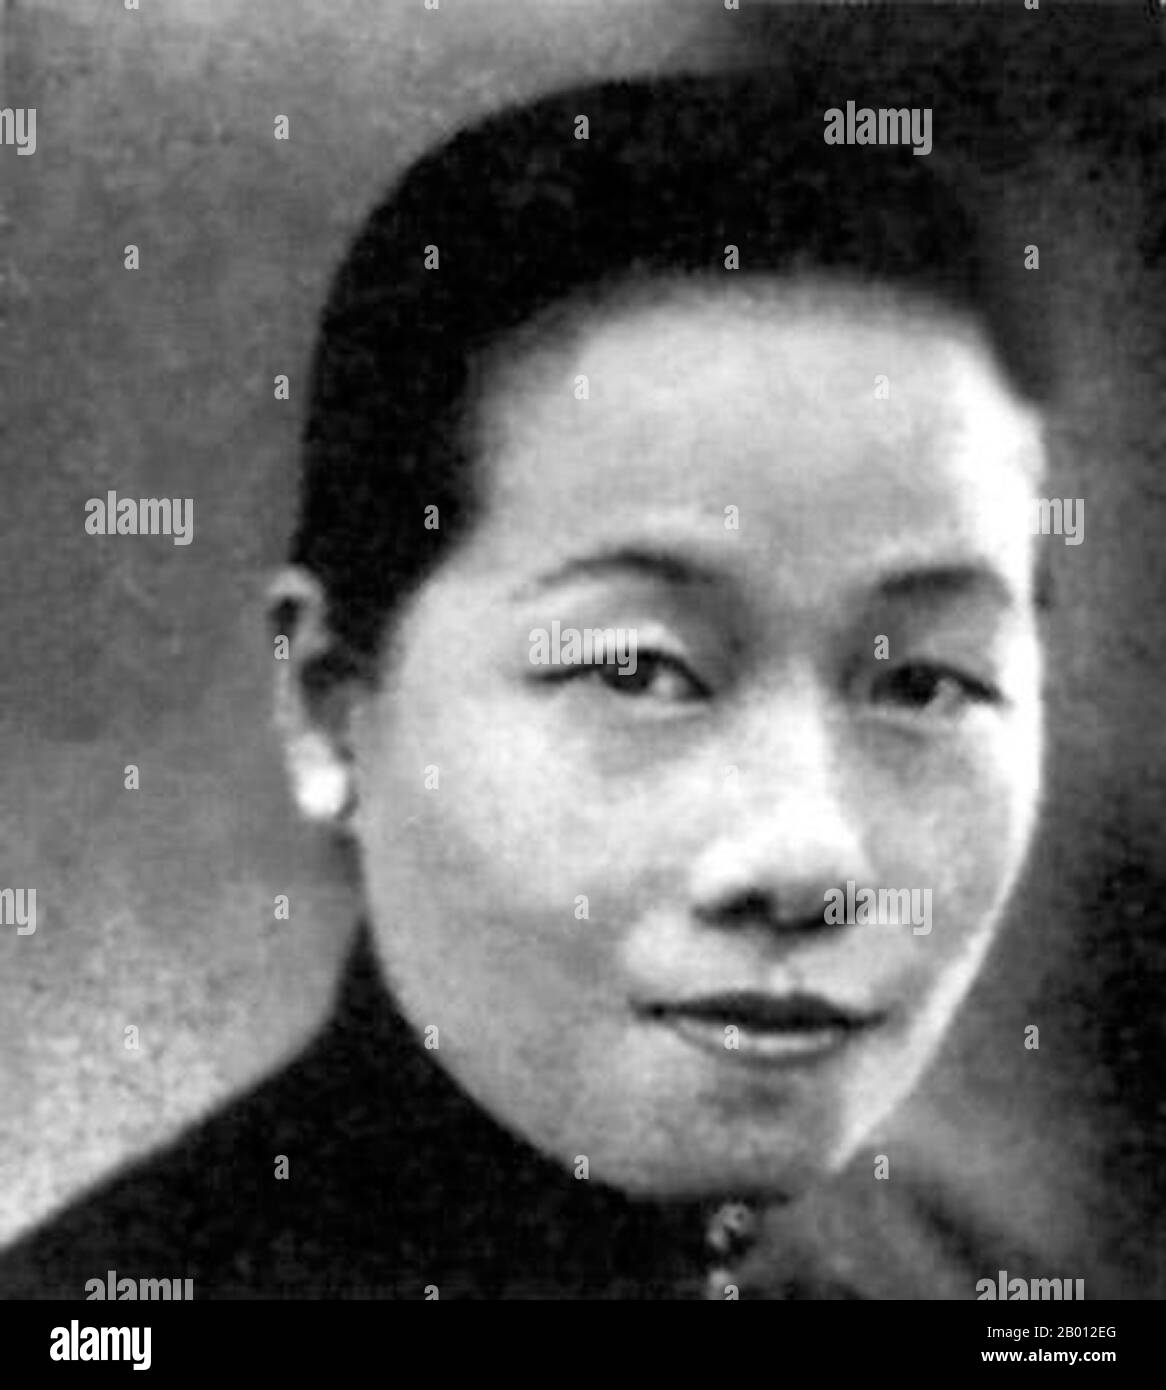 Cina: Canto alato (Soong ai-ling, Nancy Soong, 1890-1973). Il canto alato, la più anziana delle suore Soong, era la moglie di H. H. Kung (Kung Hsiang-Hsi), che era l'uomo più ricco nella Repubblica Cinese degli inizi del XX secolo. Nato a Shanghai, Soong è arrivato negli Stati Uniti al porto di San Francisco, California, il 30 giugno 1904 a bordo della SS Corea all'età di 14 anni per iniziare la sua formazione al Wesleyan College di Macon, Georgia. Tornò in Cina nel 1909 dopo la sua laurea. Alla fine del 1911 lavorò come segretario per Sun Yat-sen, un lavoro poi succeduto dalla sorella Soong Ching-ling. Foto Stock